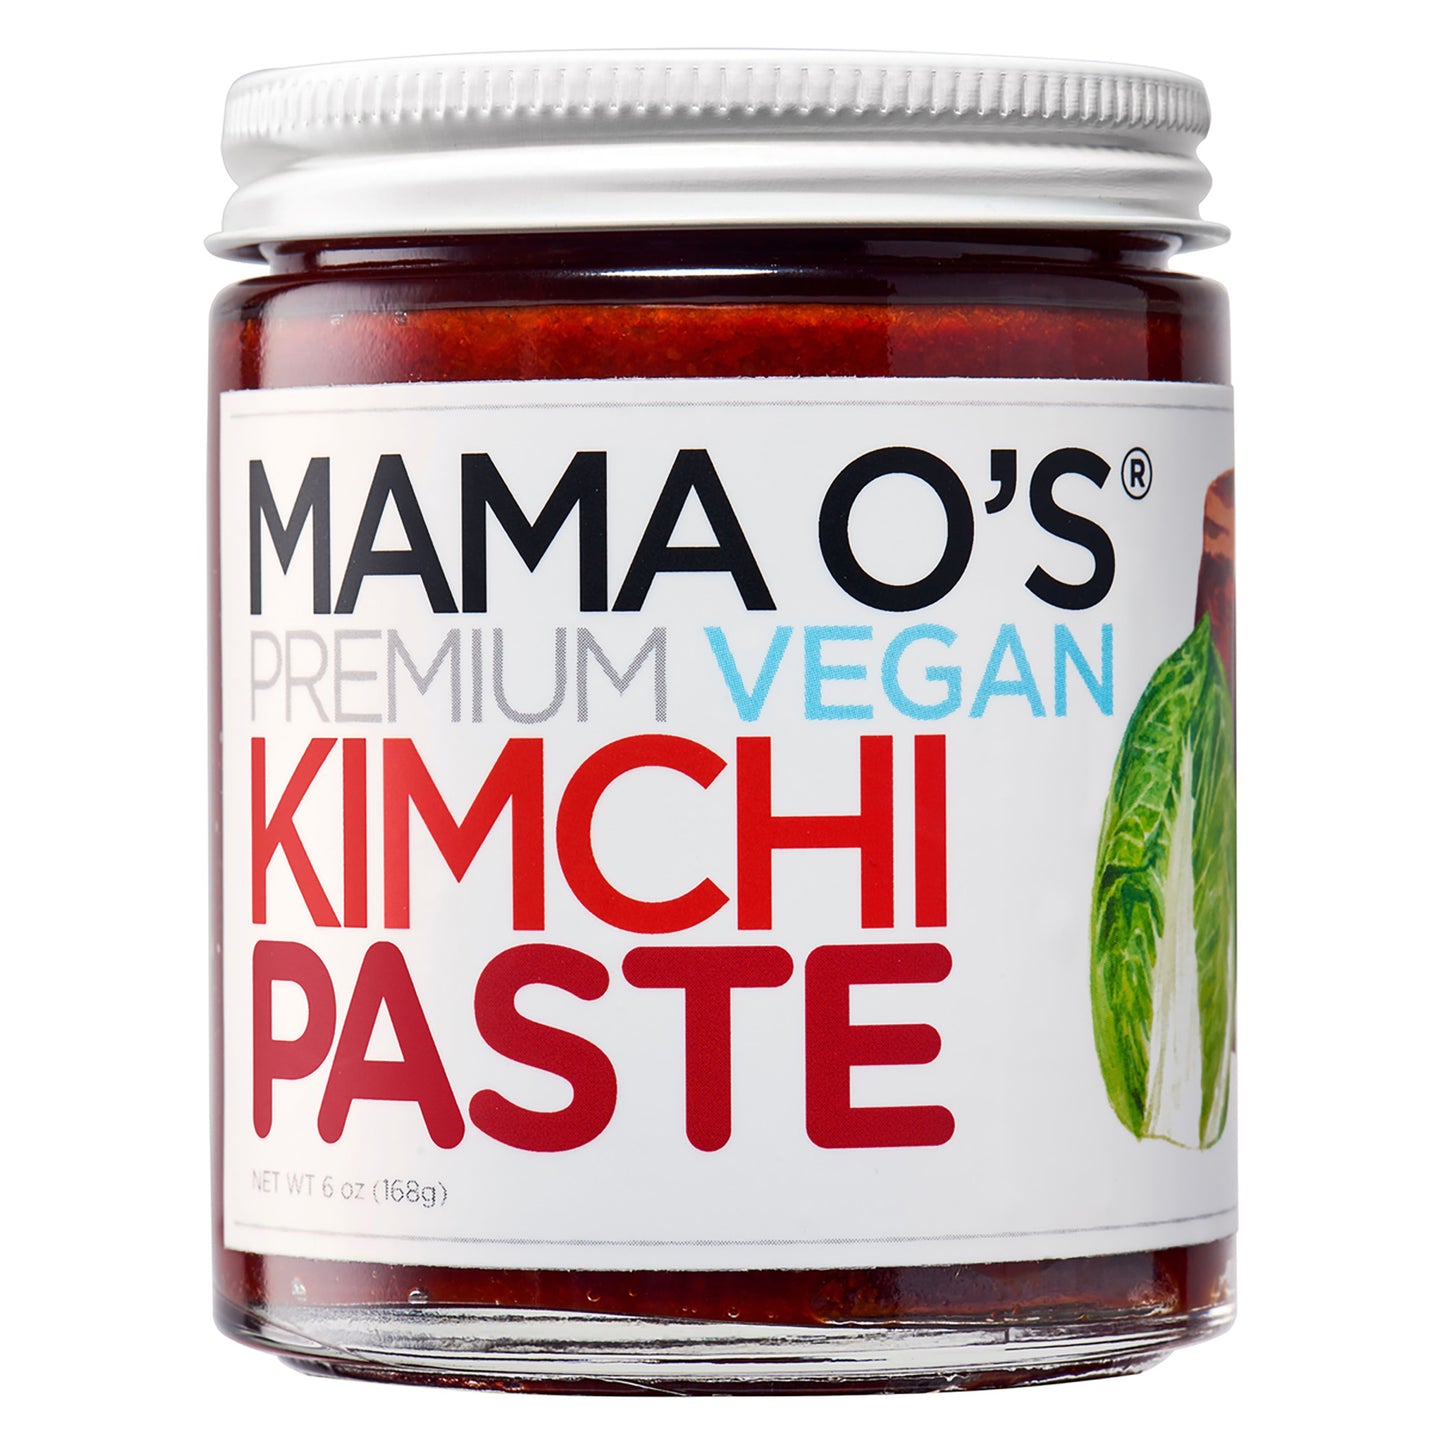 Mama O’s -  Premium Vegan Kimchi Paste